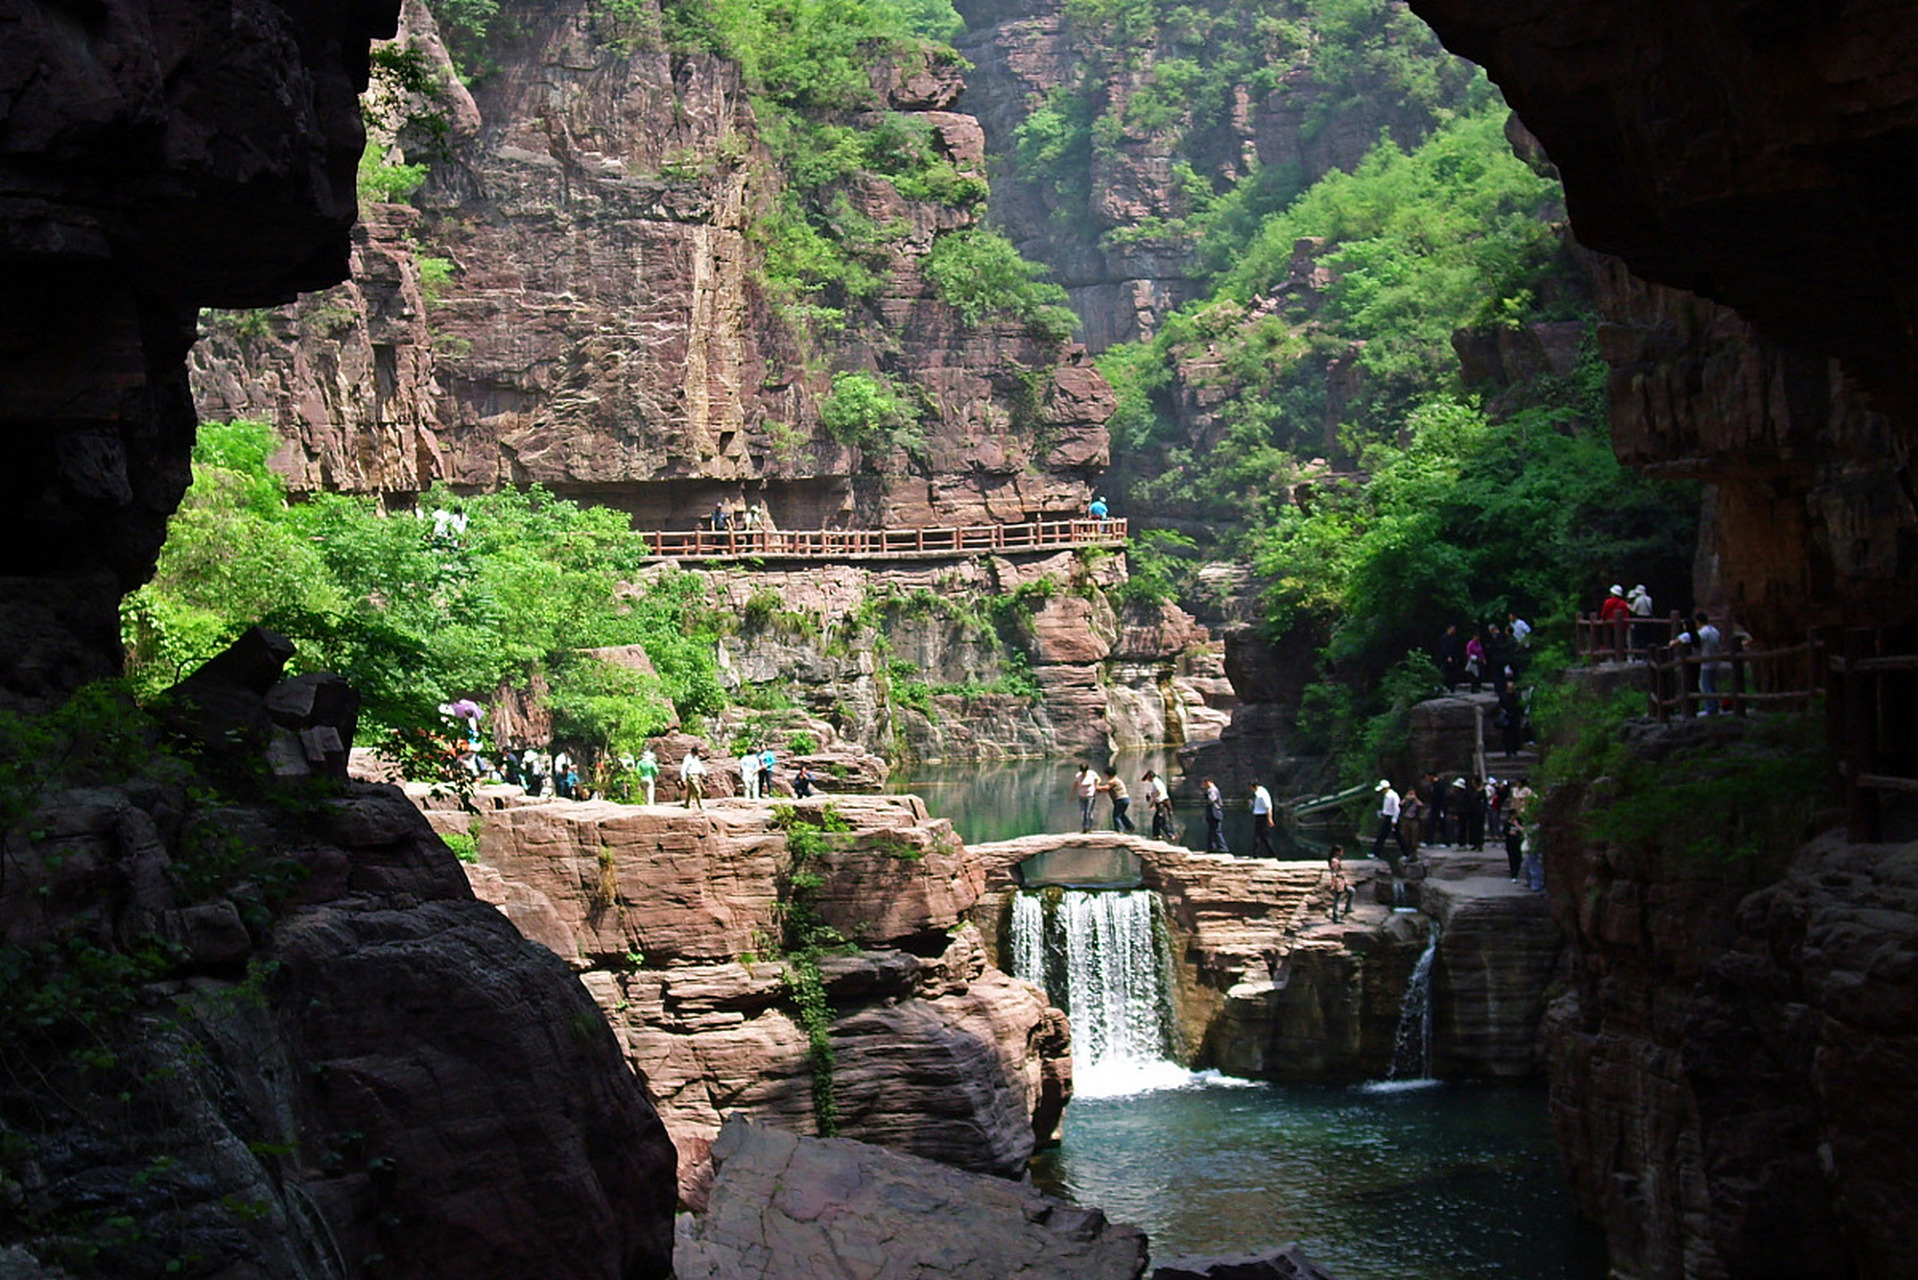 河北嶂石岩自然风景名胜区,坐落在河北省赞皇县境内,这里山清水秀